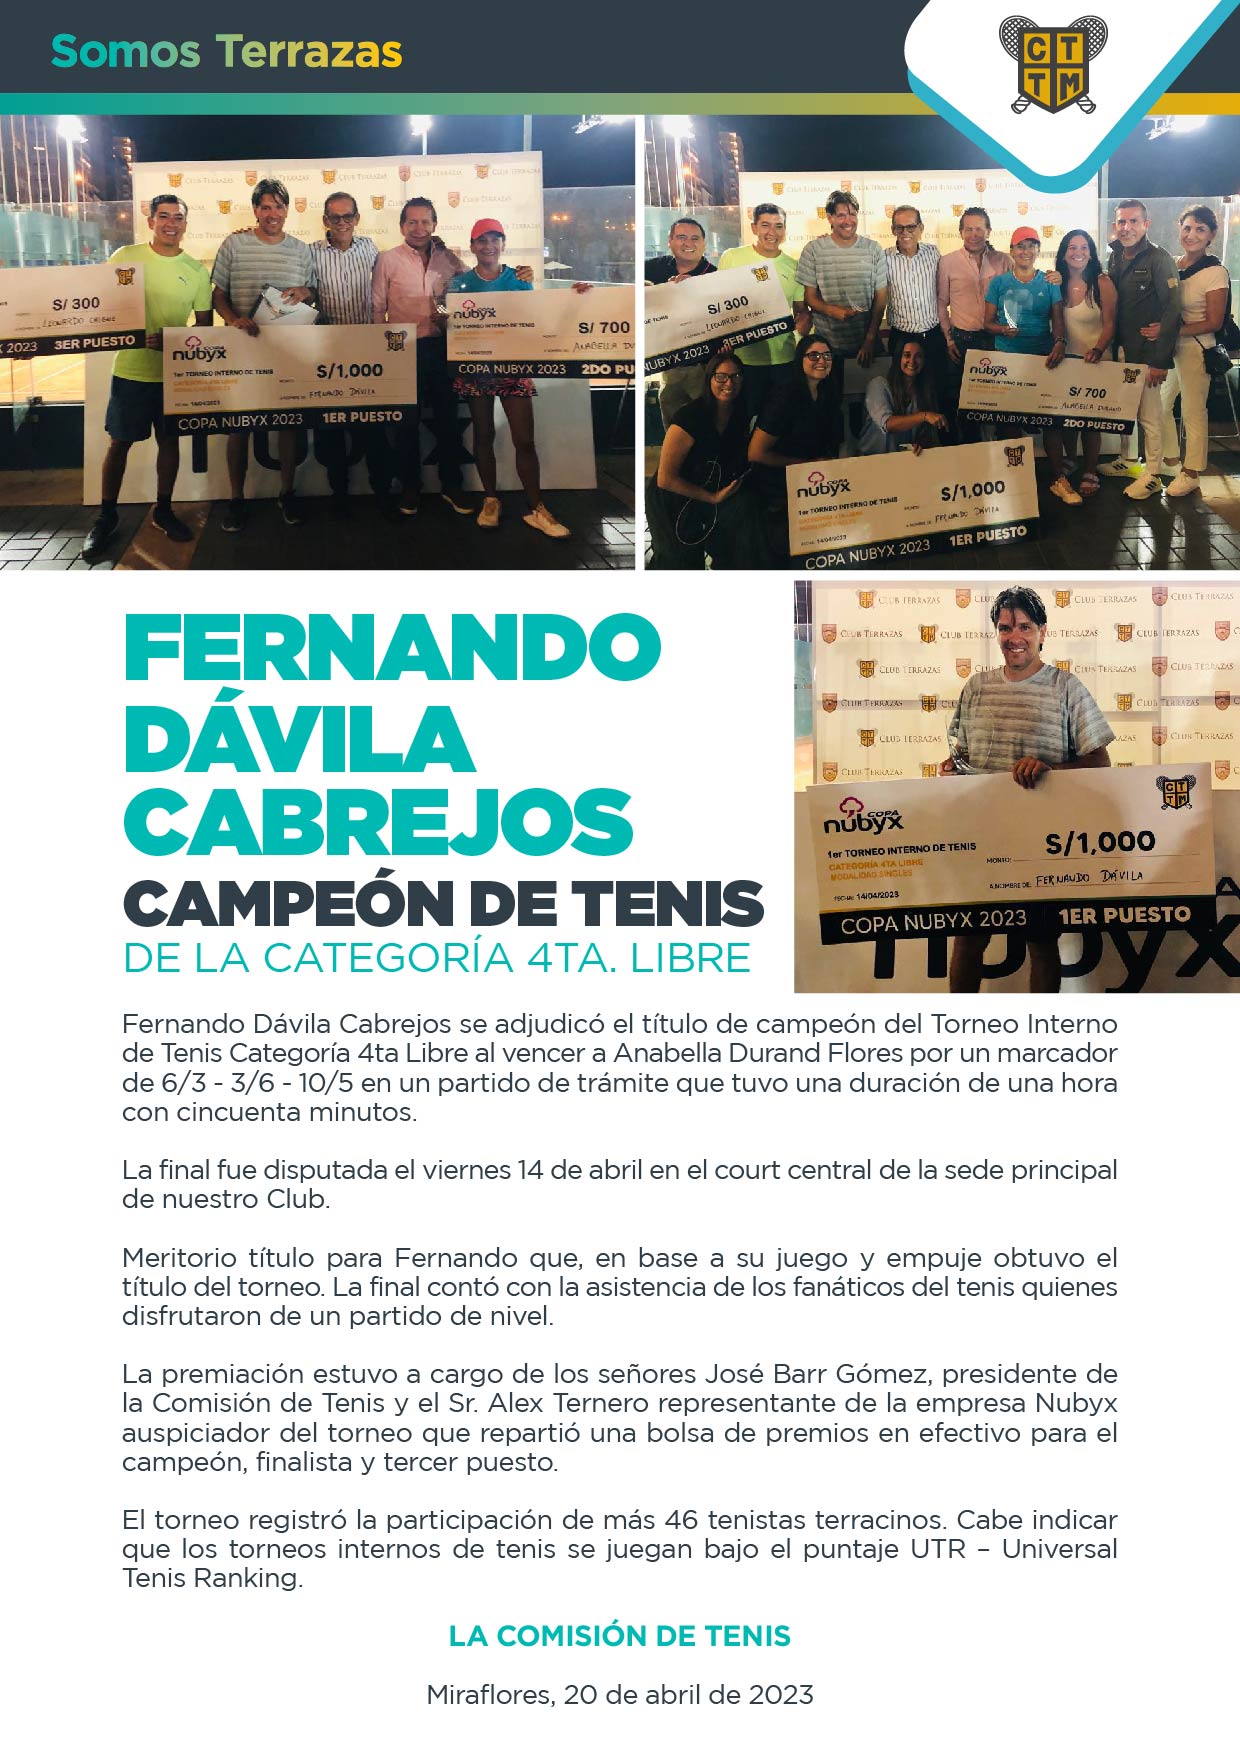 FERNANDO DÁVILA CABREJOS CAMPEÓN DE TENIS DE LA CATEGORÍA 4TA. LIBRE  